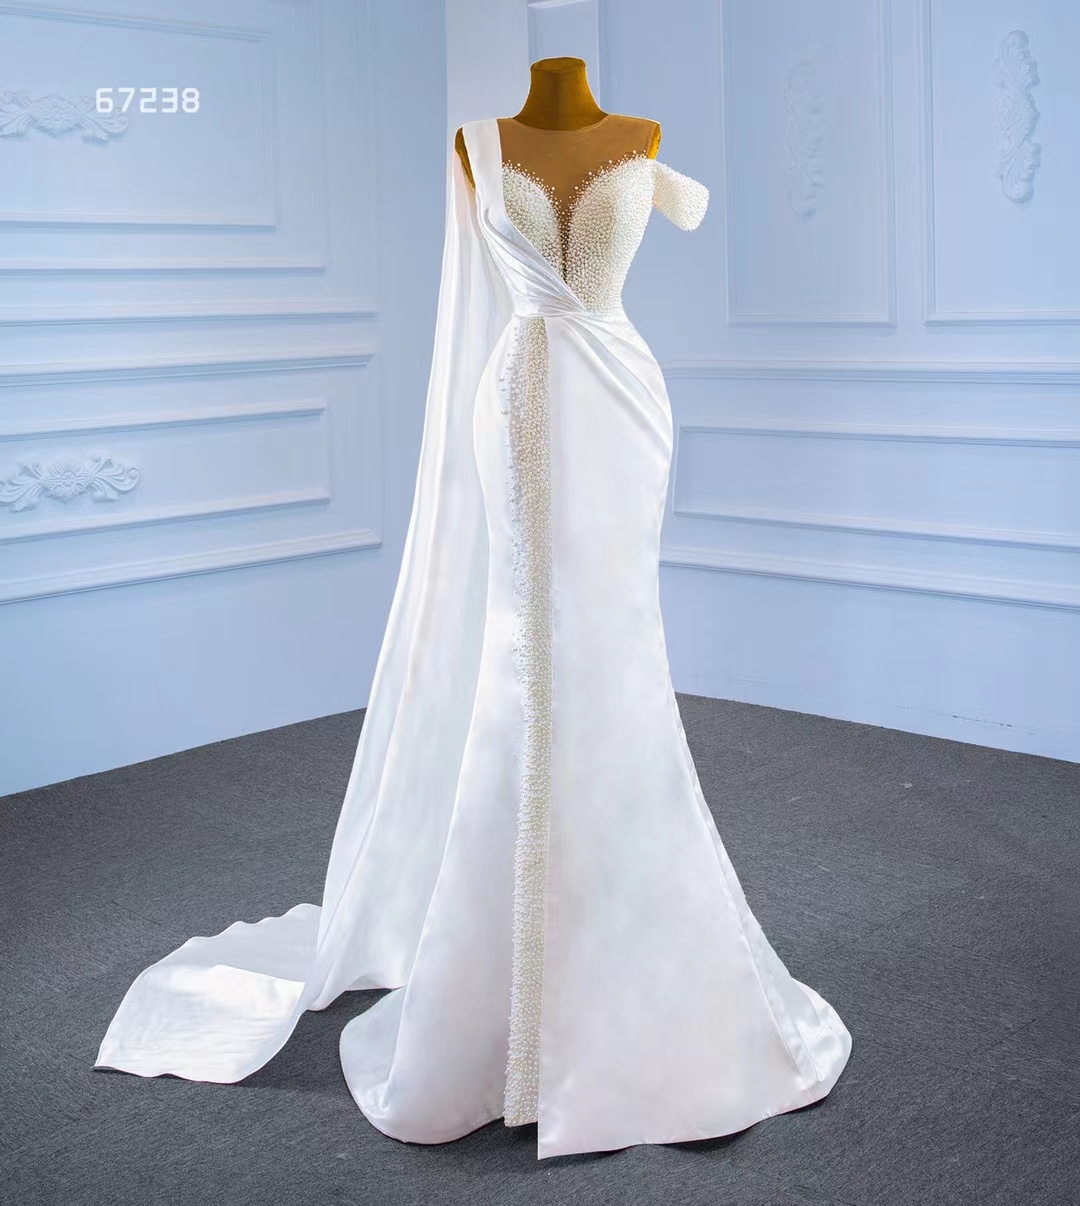 Luxus-Hochzeitskleid mit Perlen, One-Shoulder-Meerjungfrauenschwanz-Brautkleid SM67238